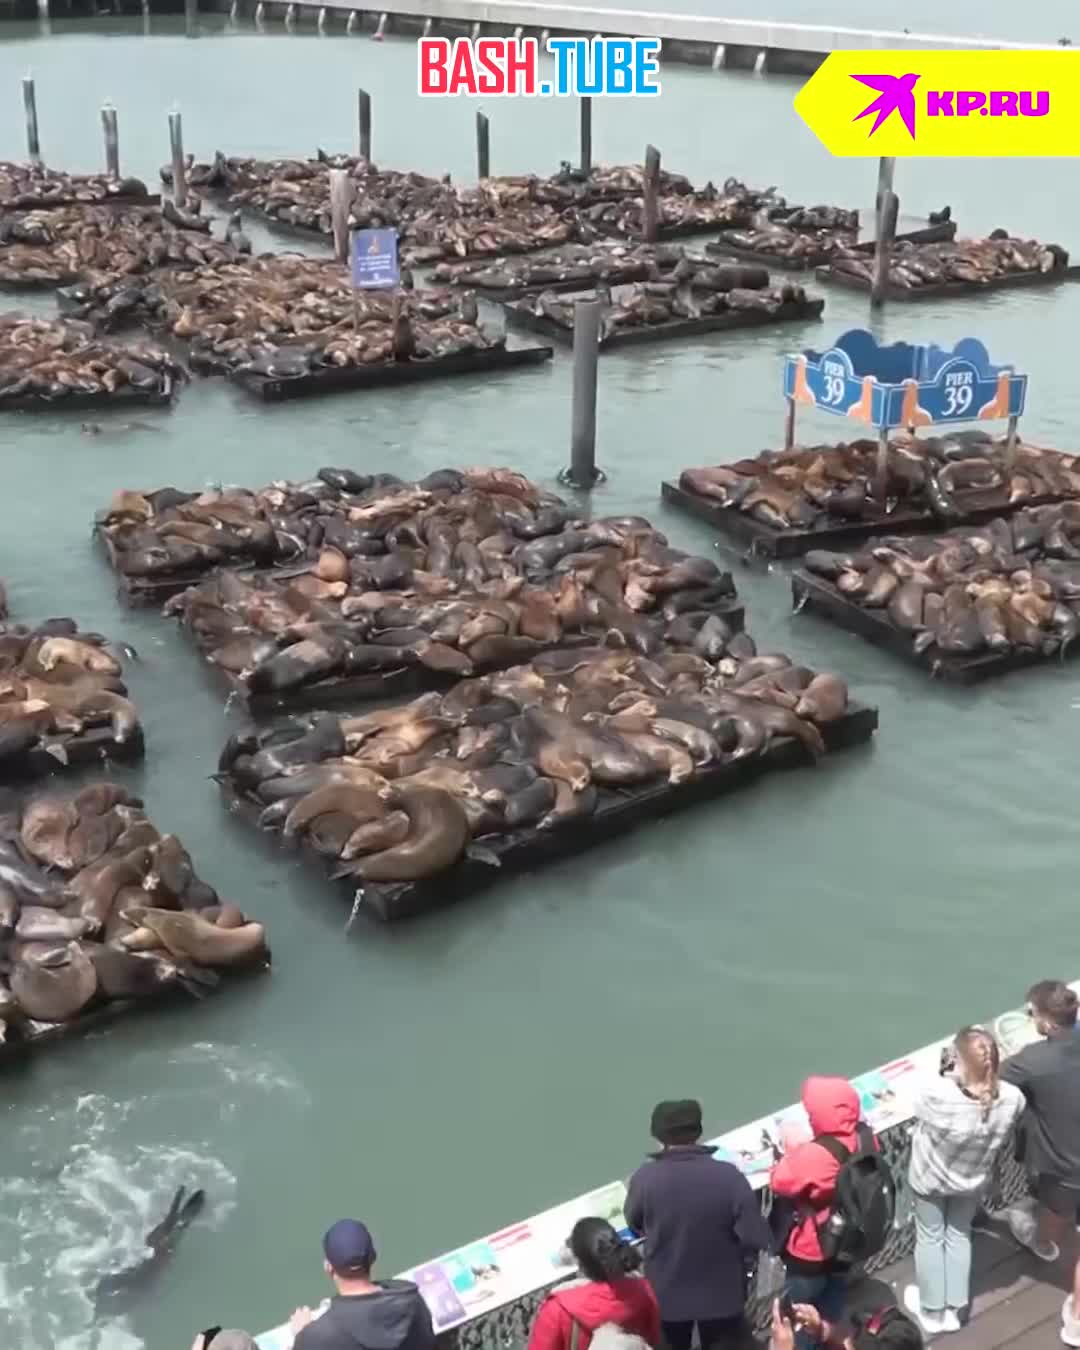  Больше двух тысяч морских львов захватили пирс в Сан-Франциско и не собираются никуда уплывать